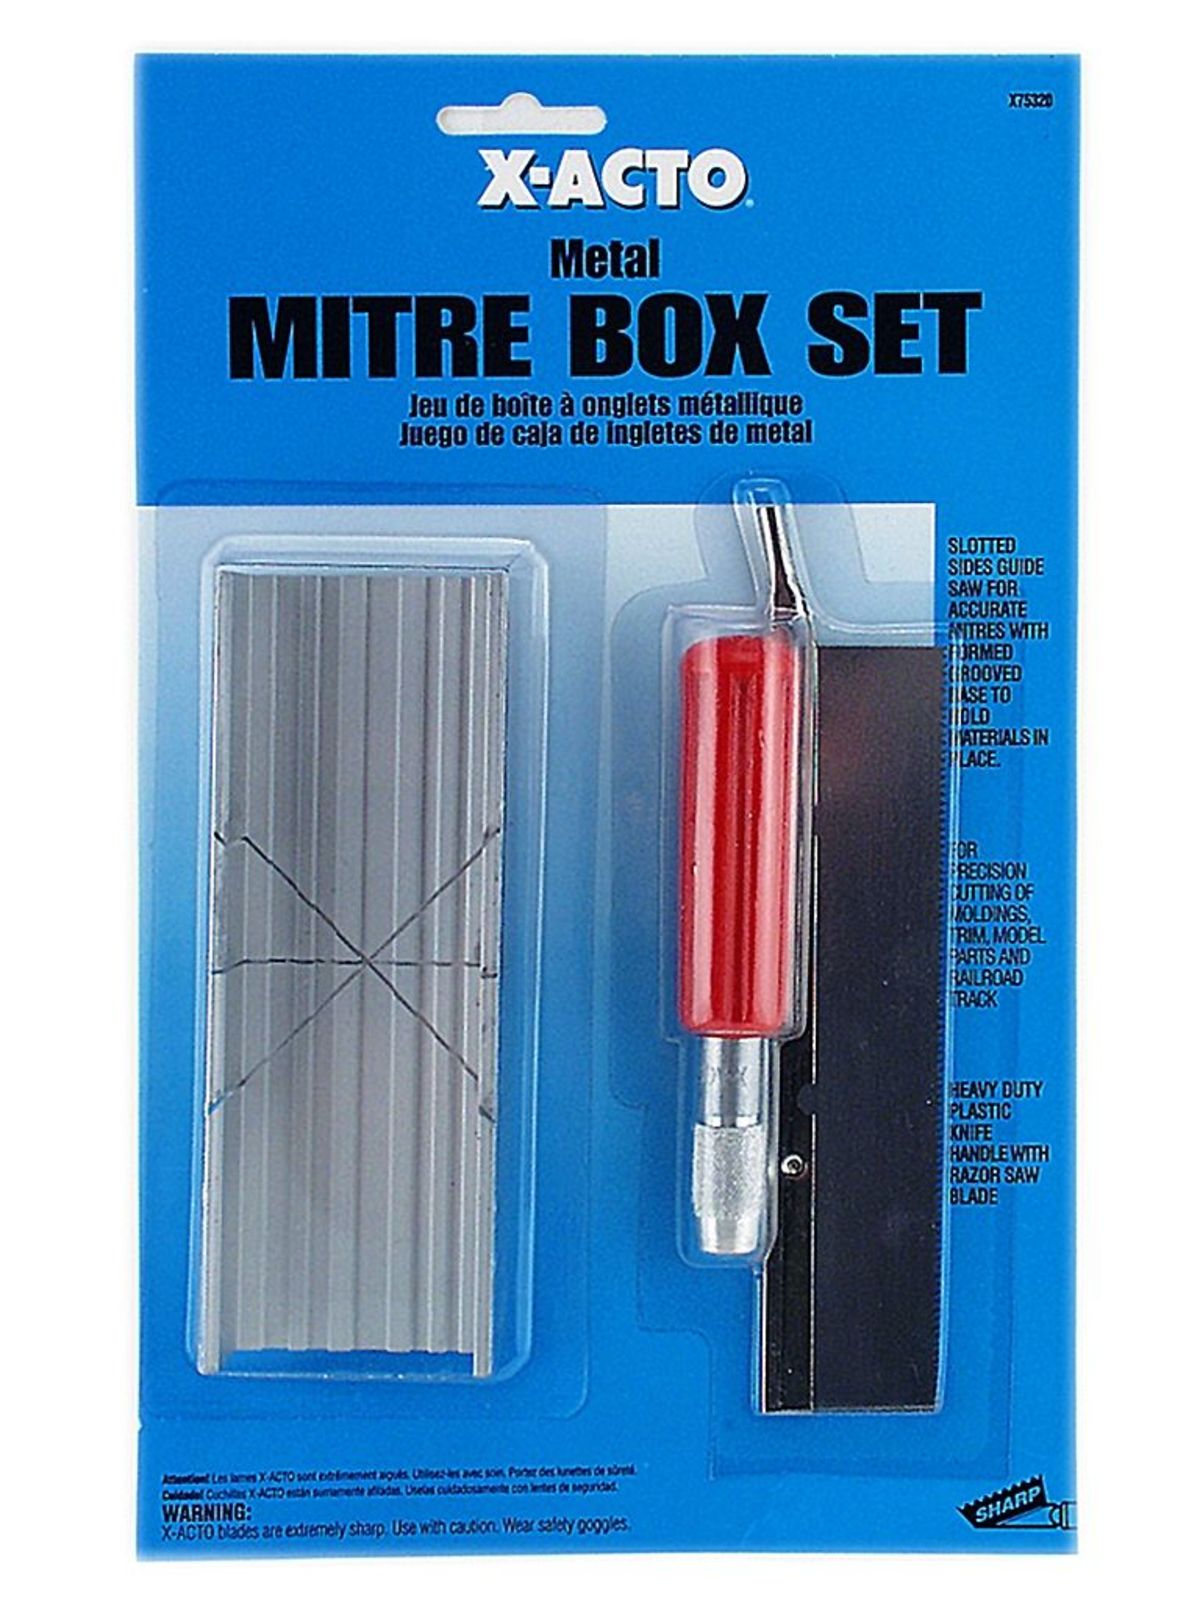 X-Acto - No. 7532 Small Mitre Box Set